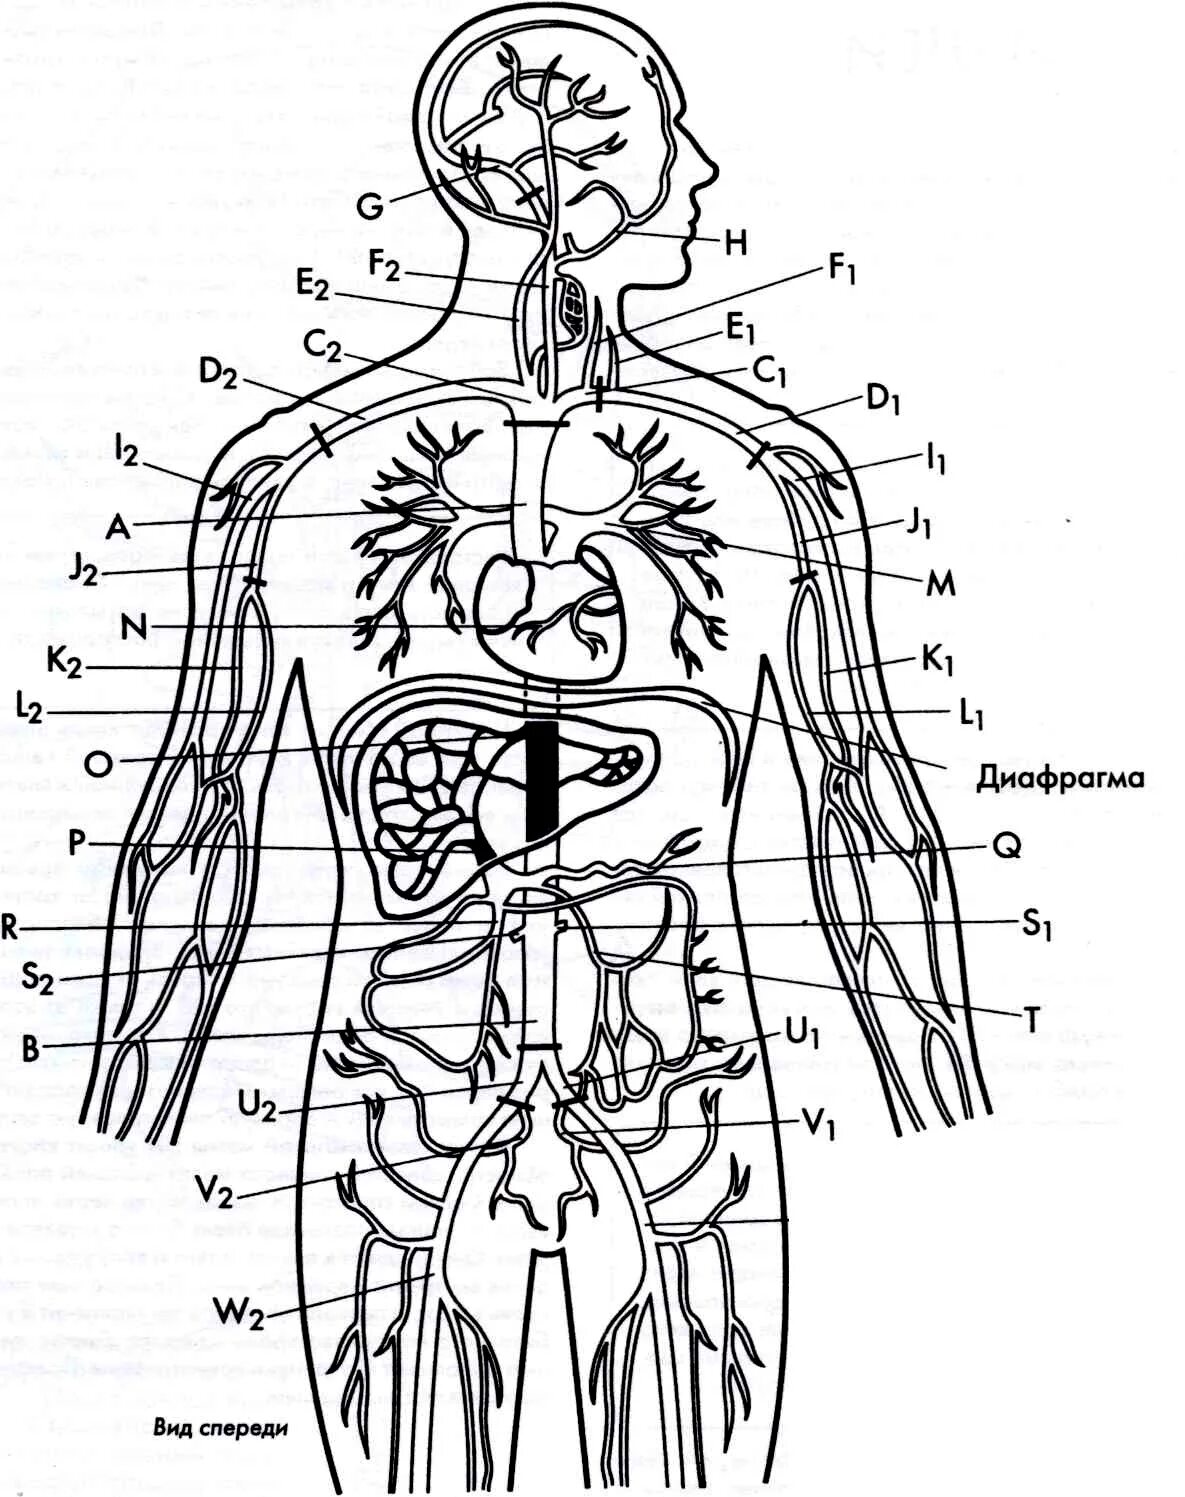 Органы человека картинка. Внутренние органы человека схема схема. Внутренняя структура человека схема расположения. Схема строения тела человека с внутренними органами. Внутренние органы человека рисунок.